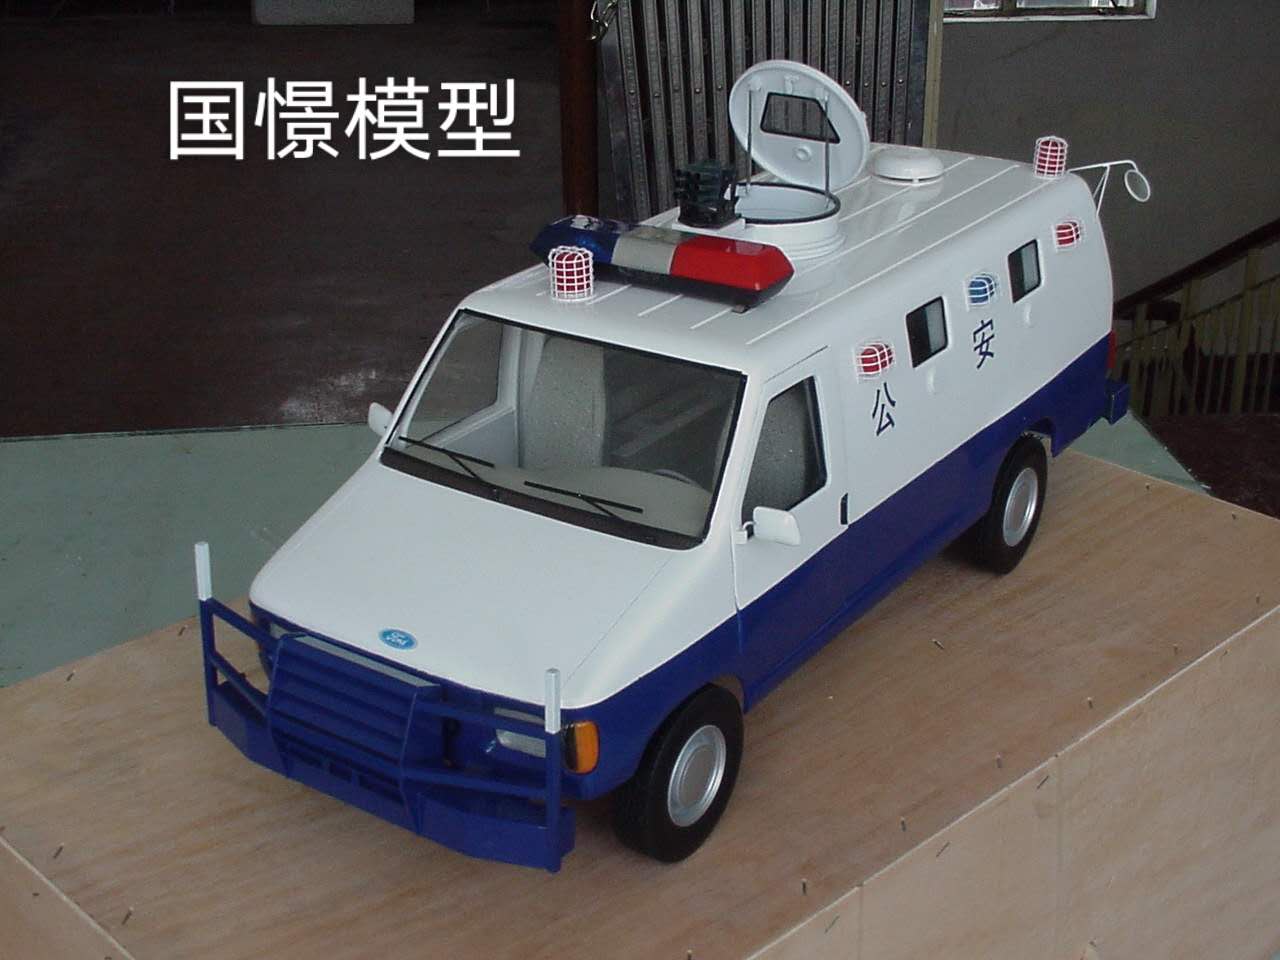 涿州市车辆模型